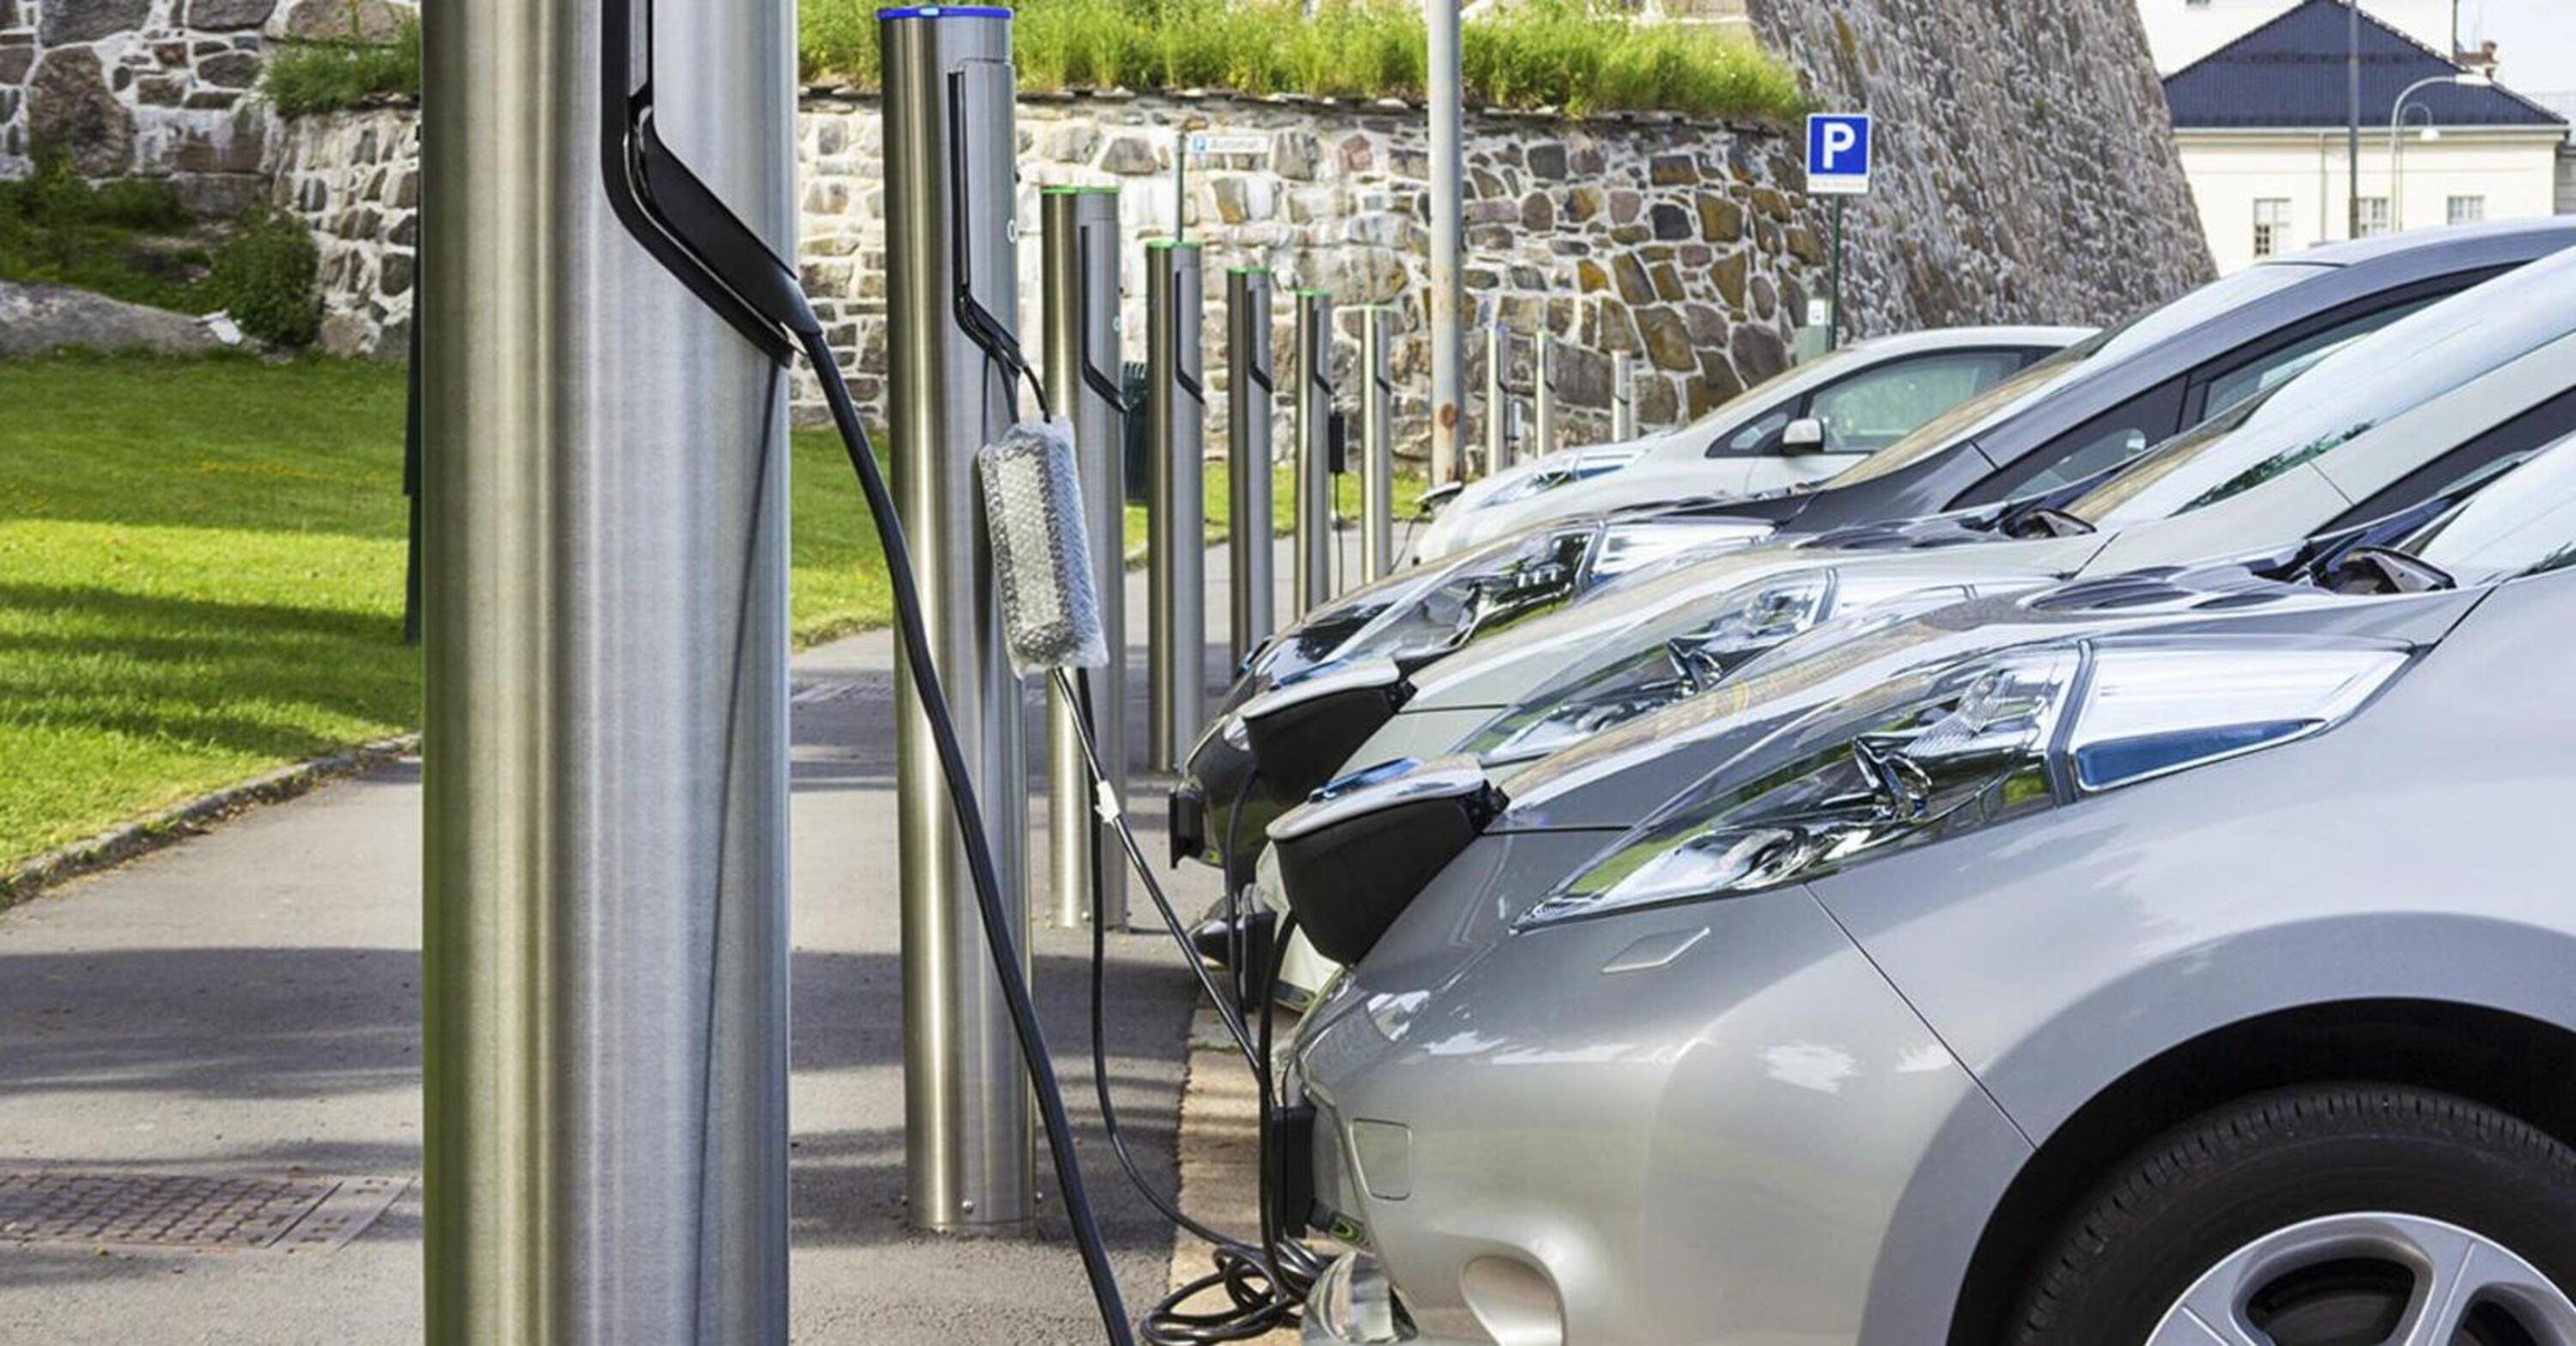 Incentivi auto: via libera ai contributi per ibride ed elettriche pari a 800 milioni di euro